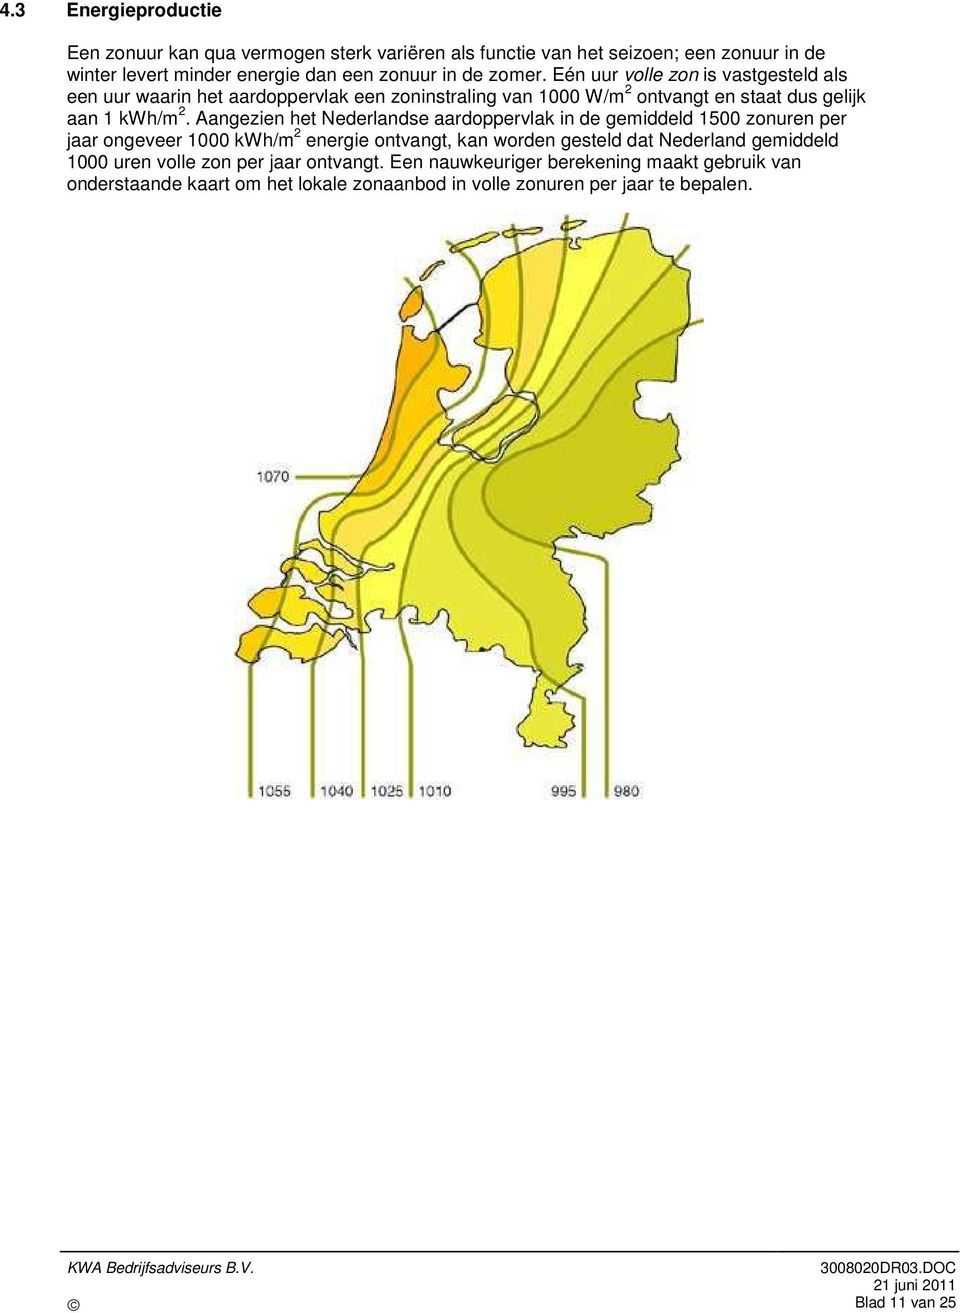 Aangezien het Nederlandse aardoppervlak in de gemiddeld 1500 zonuren per jaar ongeveer 1000 kwh/m 2 energie ontvangt, kan worden gesteld dat Nederland gemiddeld